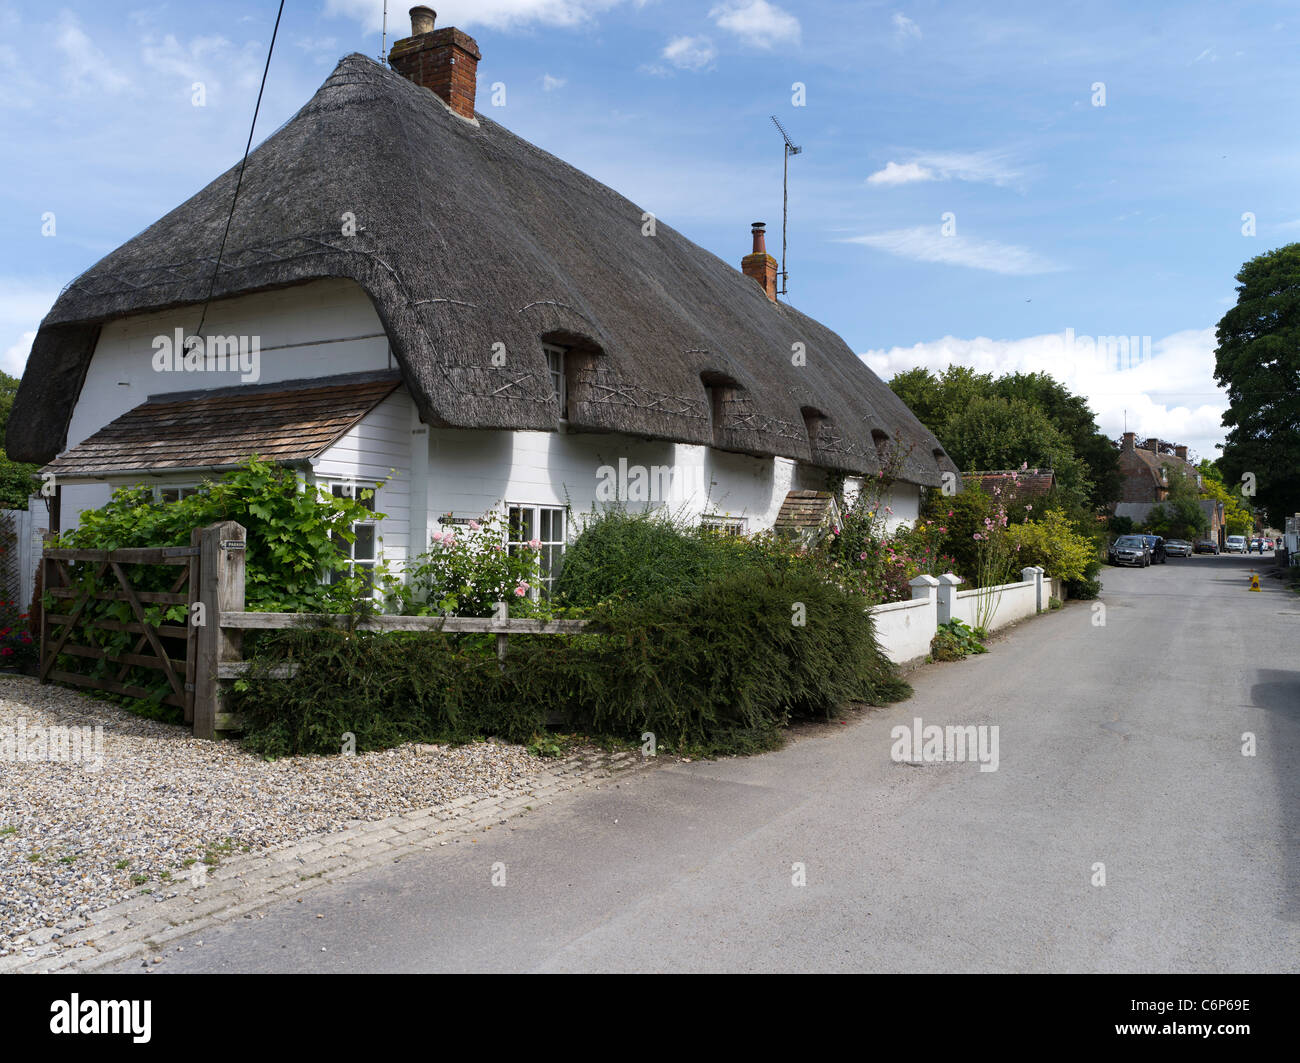 dh AVEBURY WILTSHIRE chemin de village anglais chaume cottage angleterre thatched le toit abrite une allée idyllique de campagne d'été au royaume-uni Banque D'Images